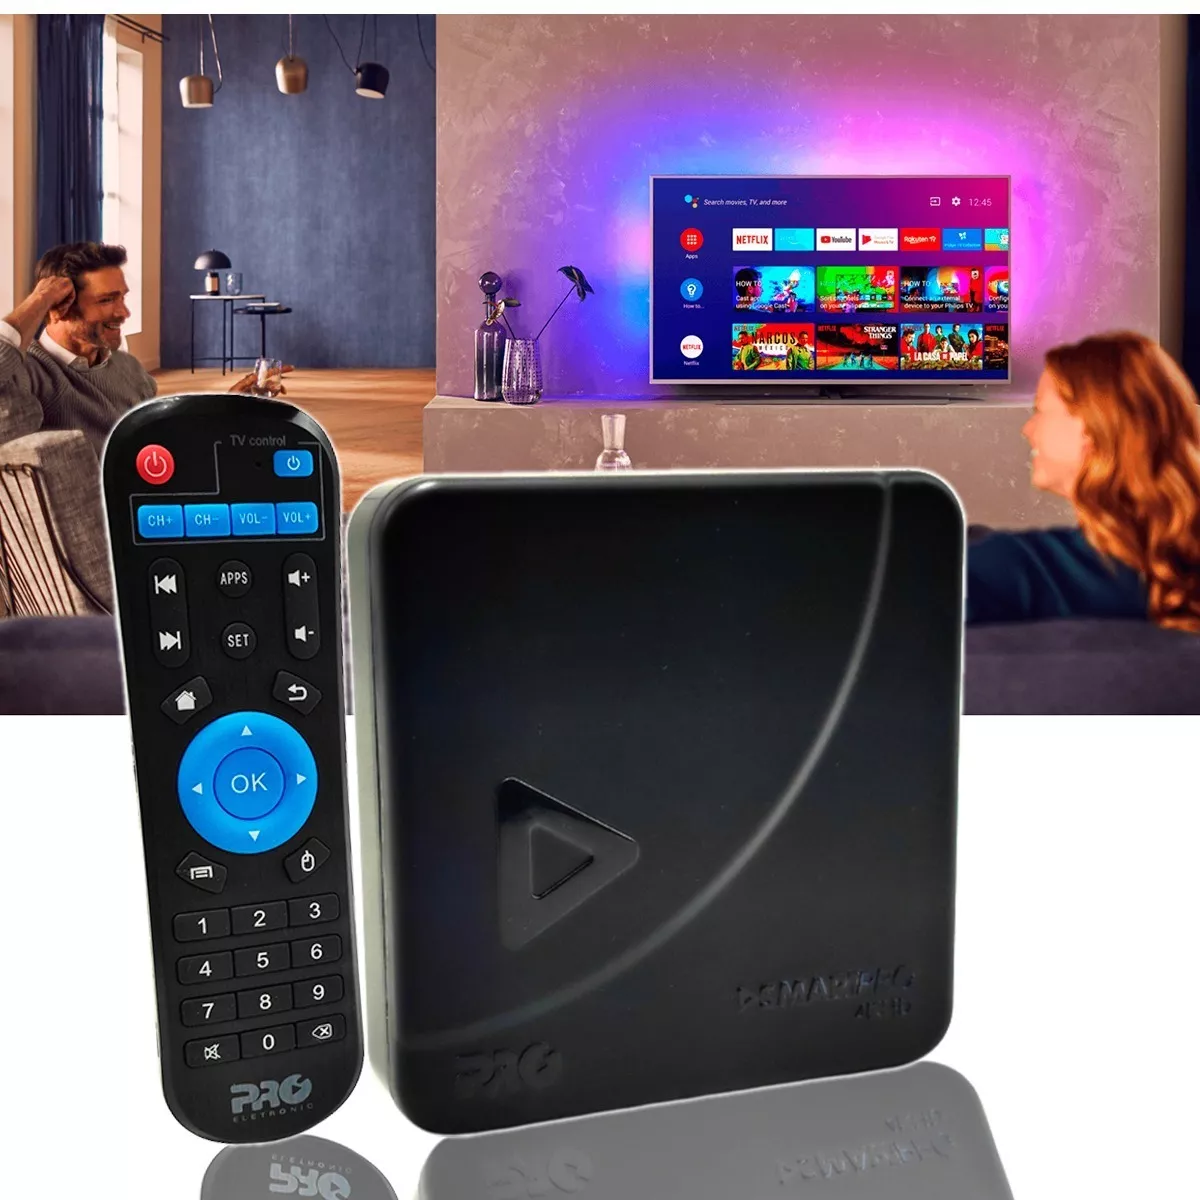 Smart Box Tv Transforme Sua Tv Tubo, Lcd, Led Em Smart Tvbox